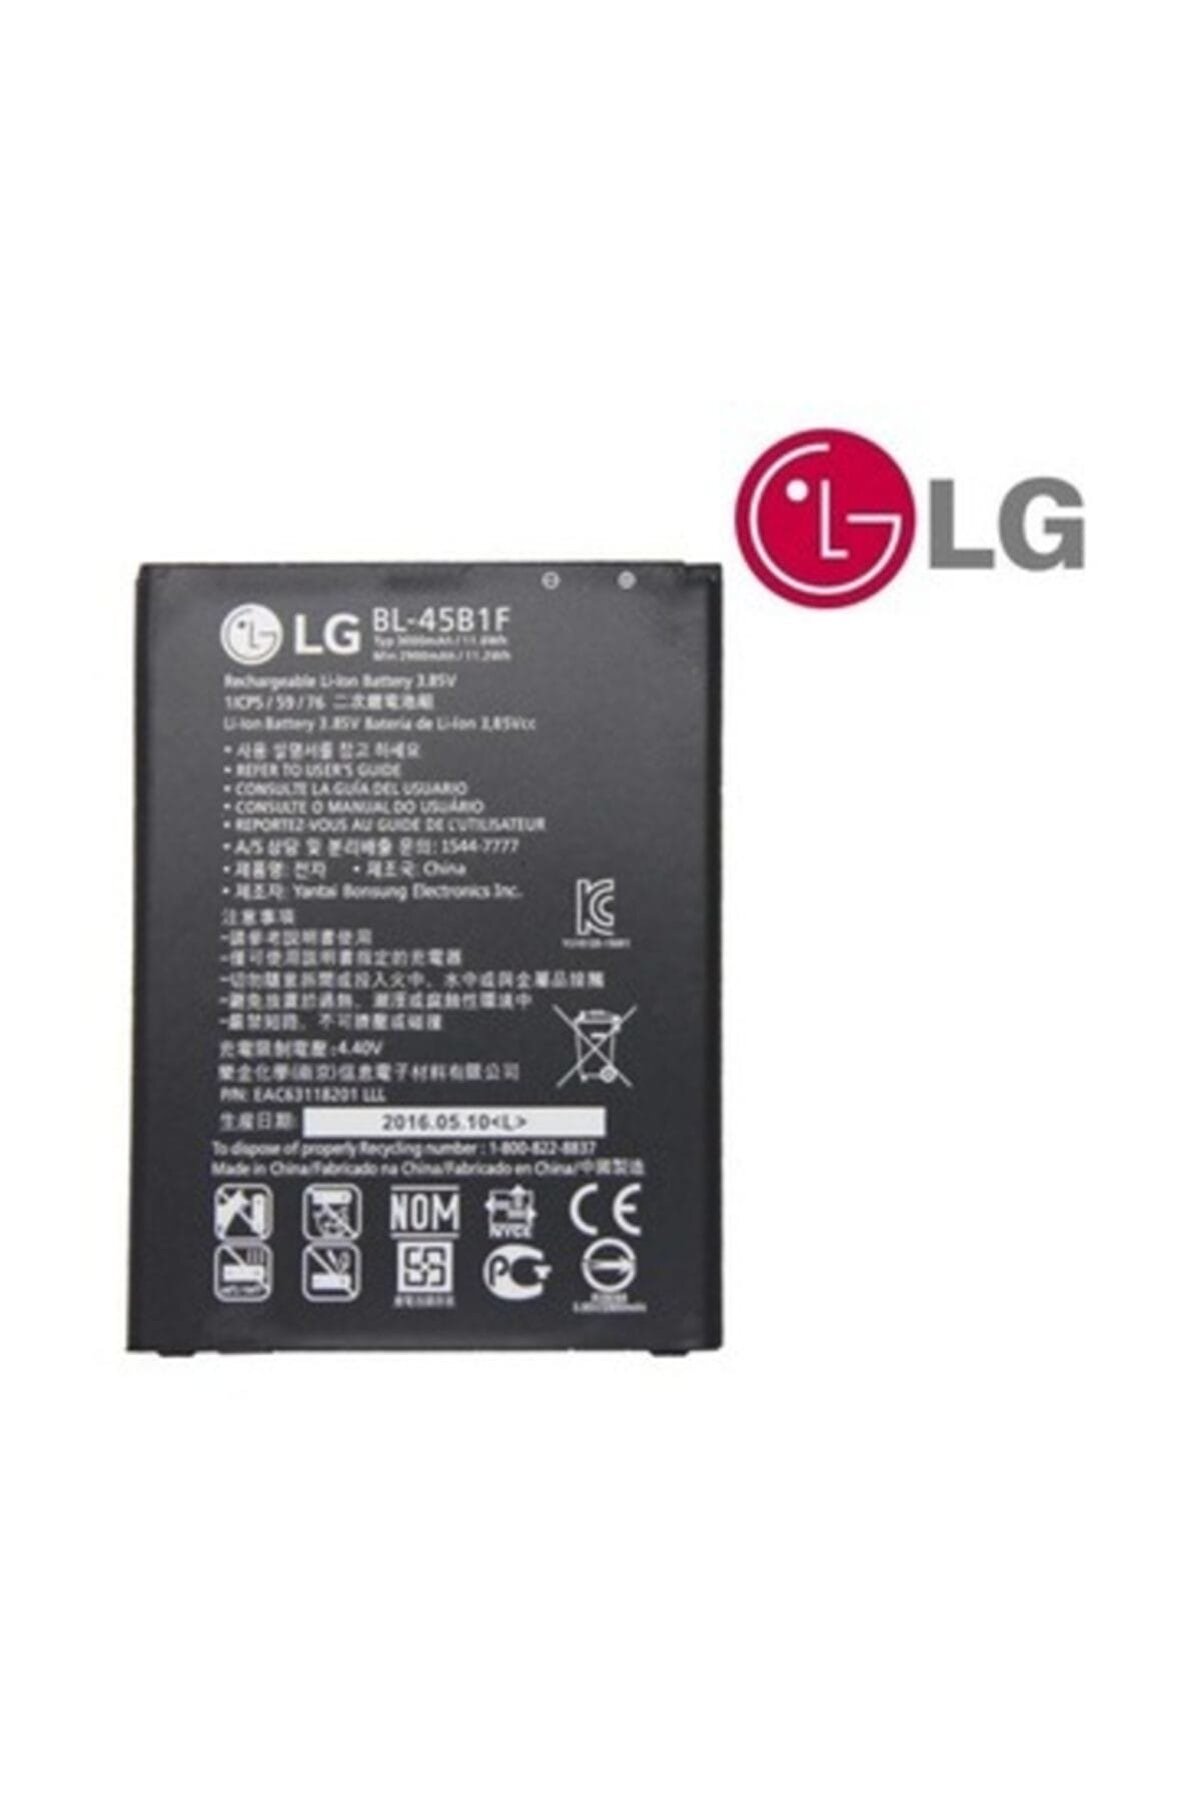 LG Stylus 2 K520 Bl-45b1f Batarya Pil-ithalatçı Garantilidir